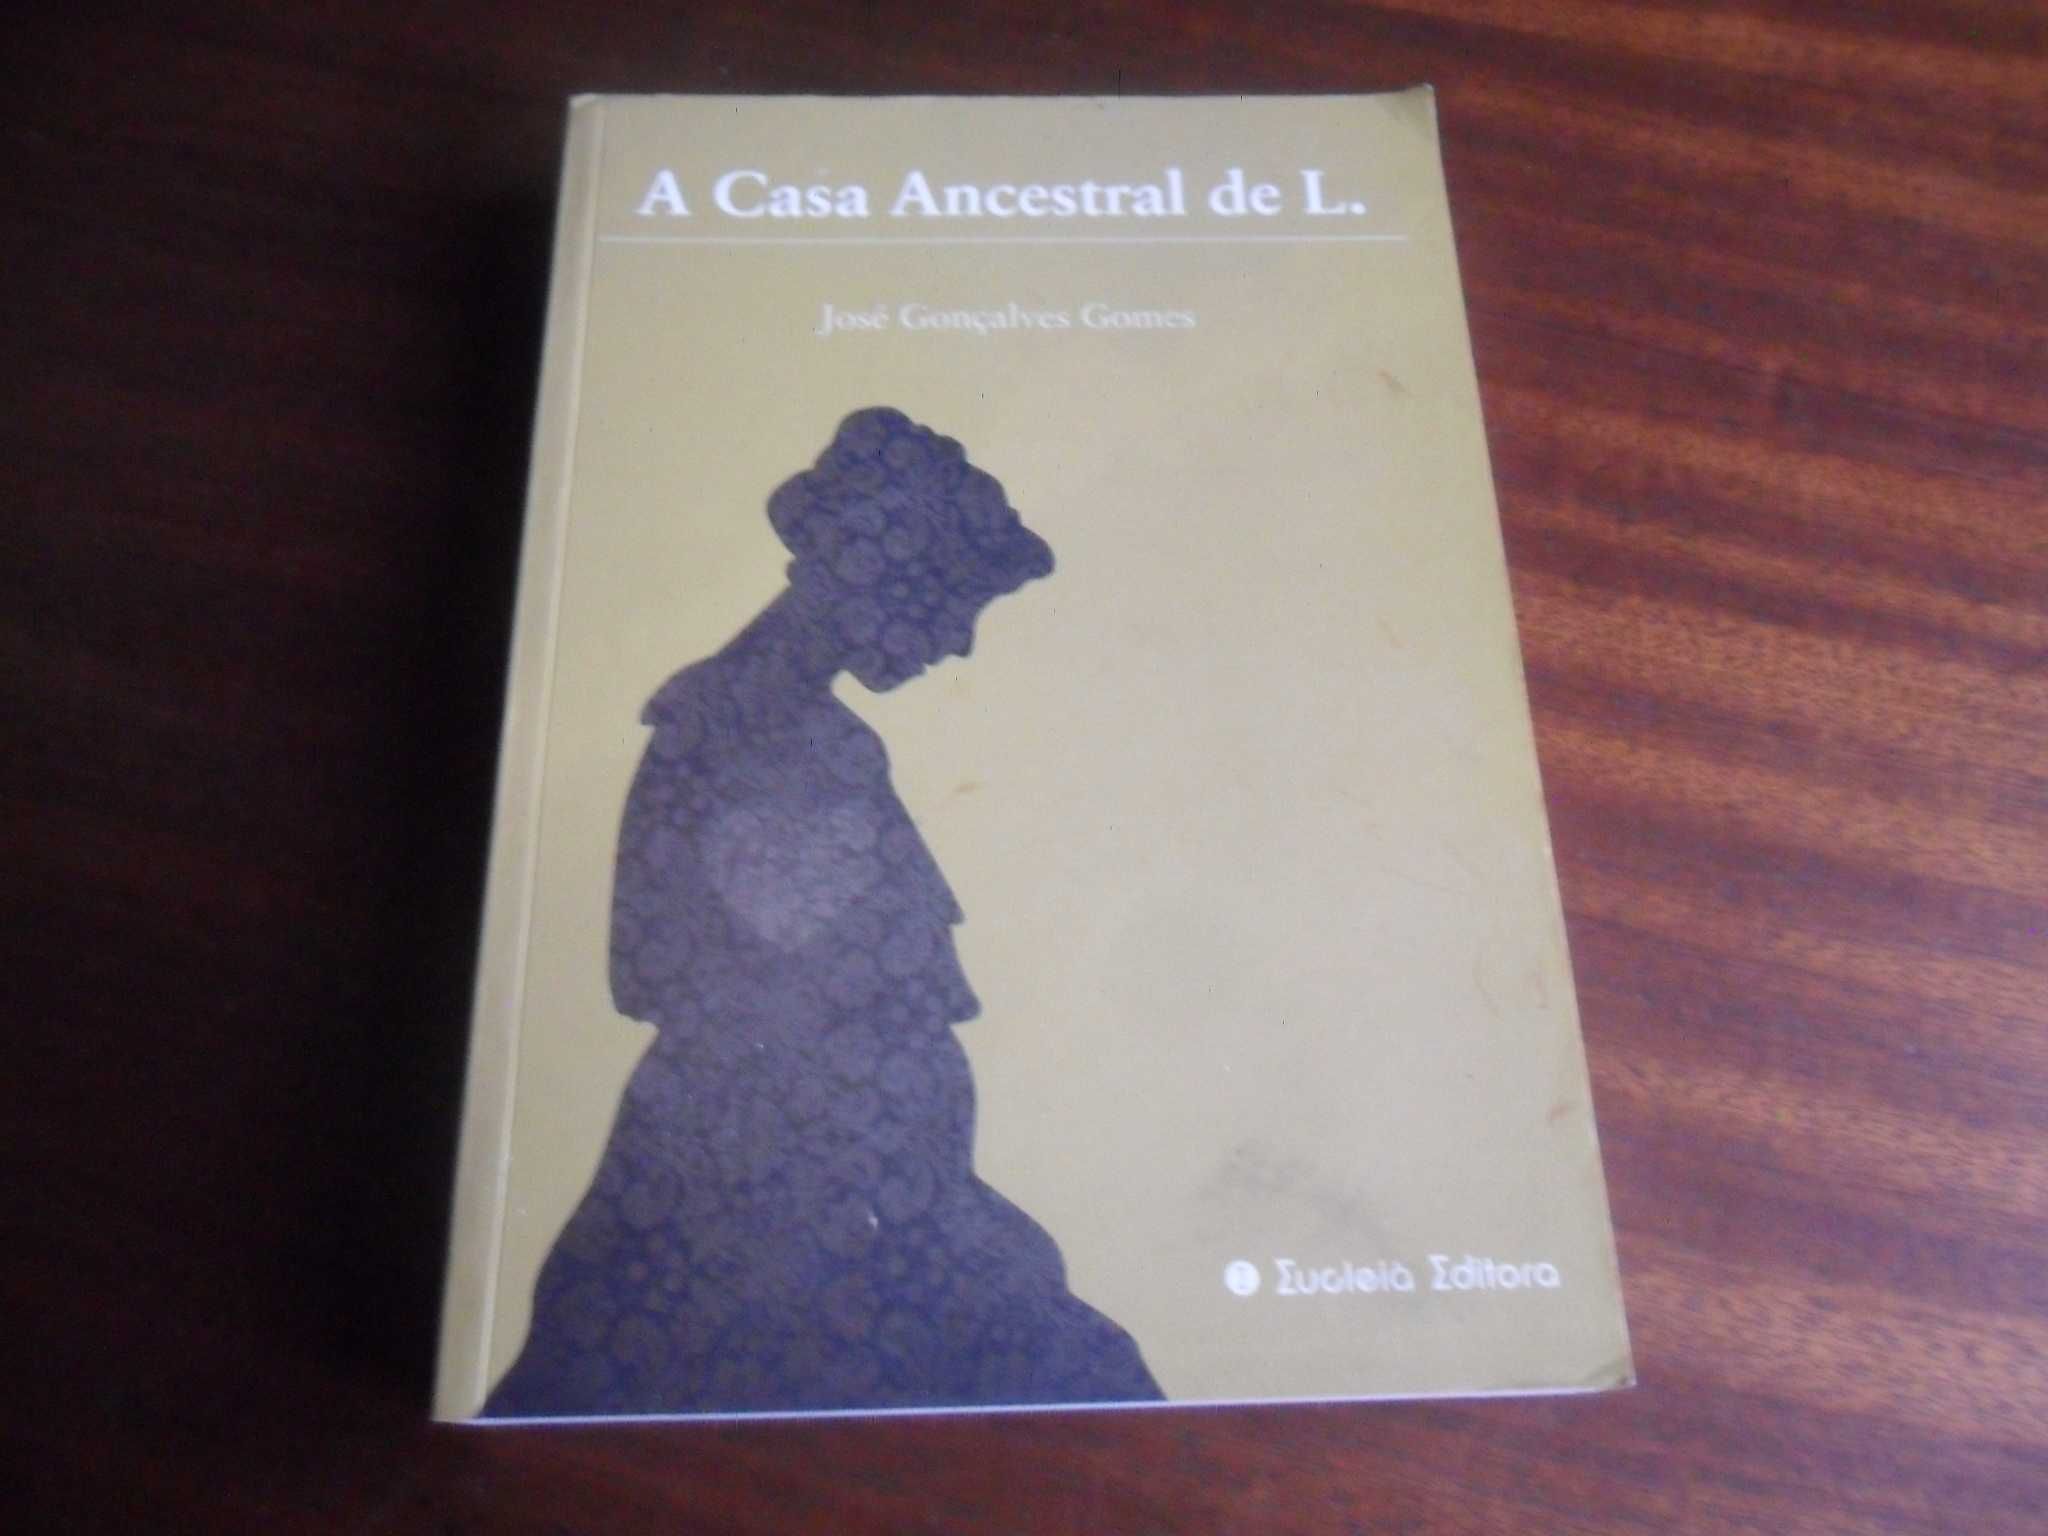 "A Casa Ancestral de L." de José Gonçalves Gomes - 1ª Edição de 2011